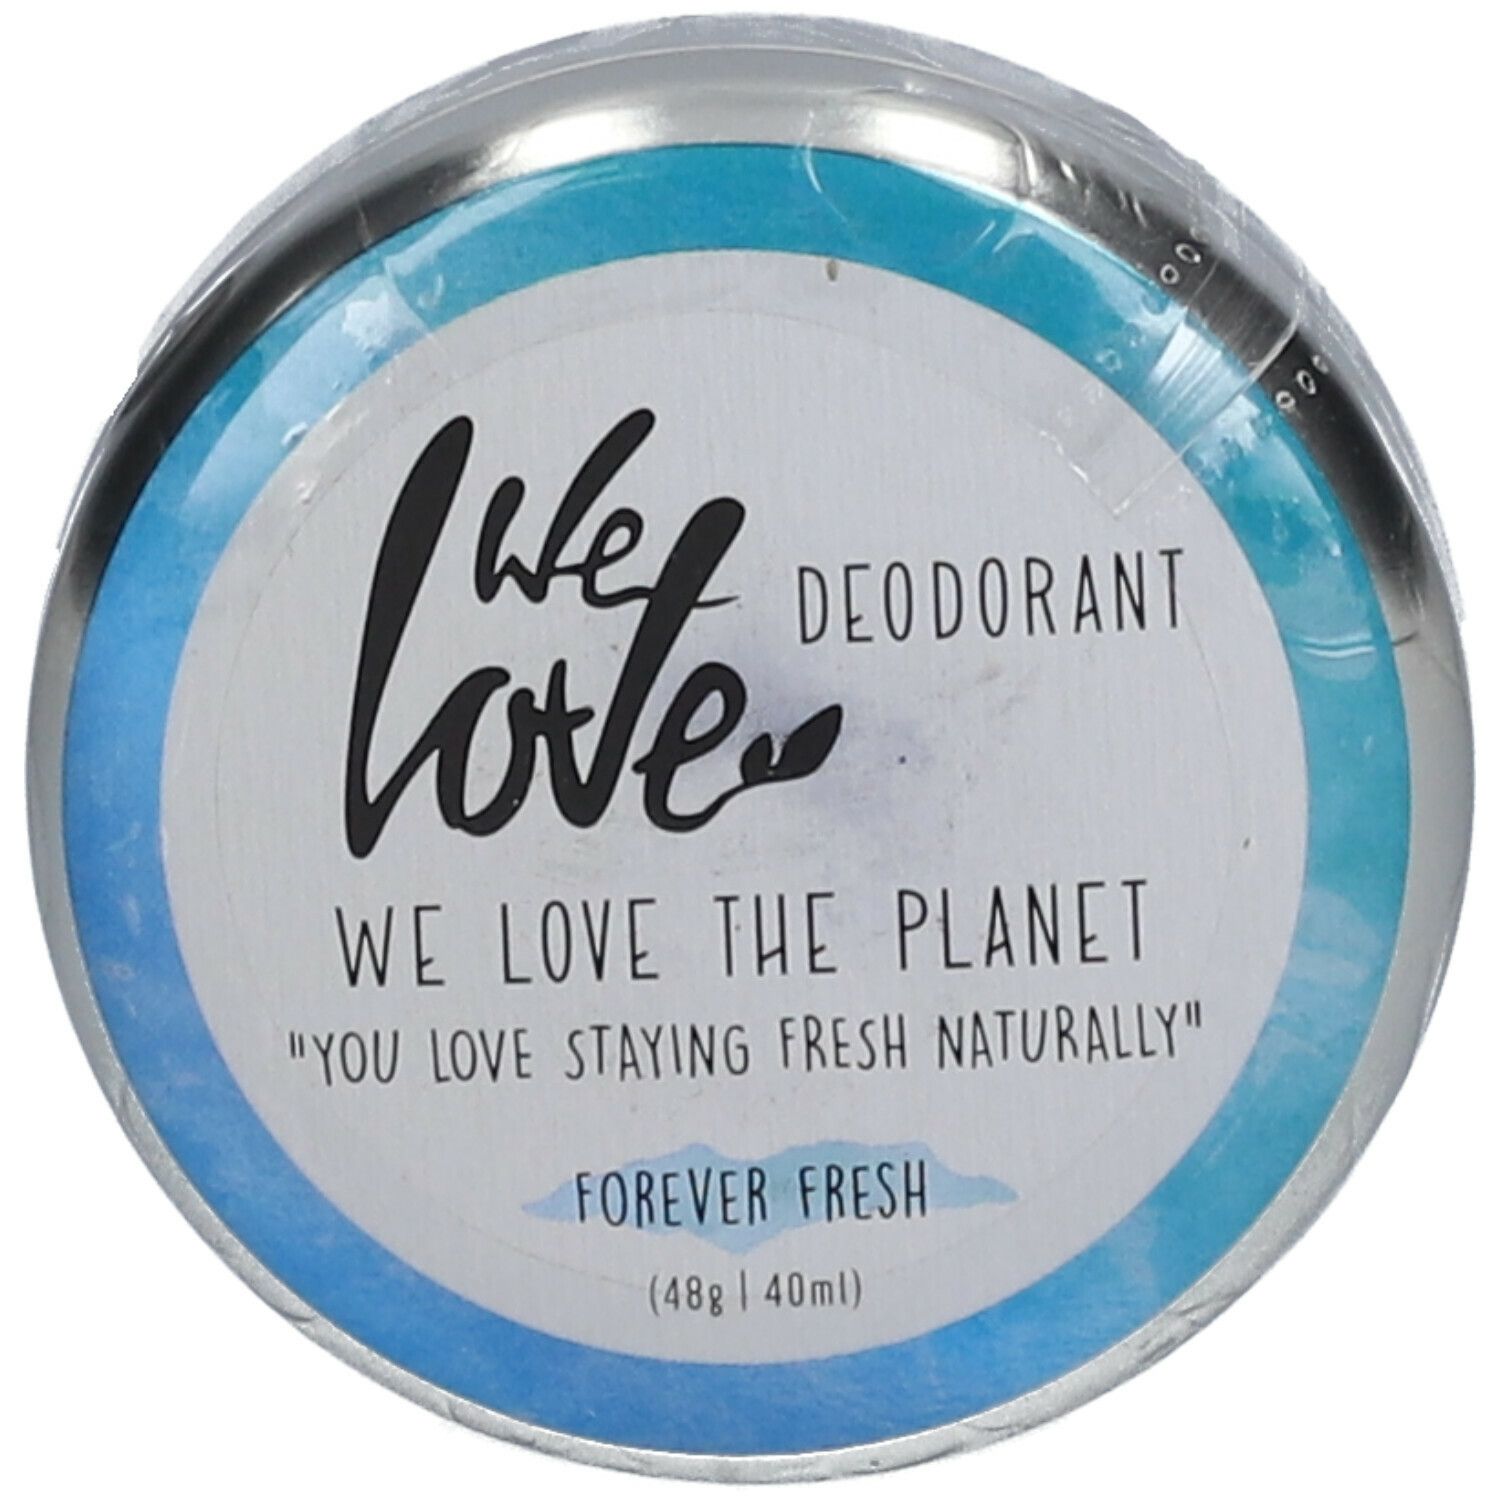 We love Deodorant Forever Fresh